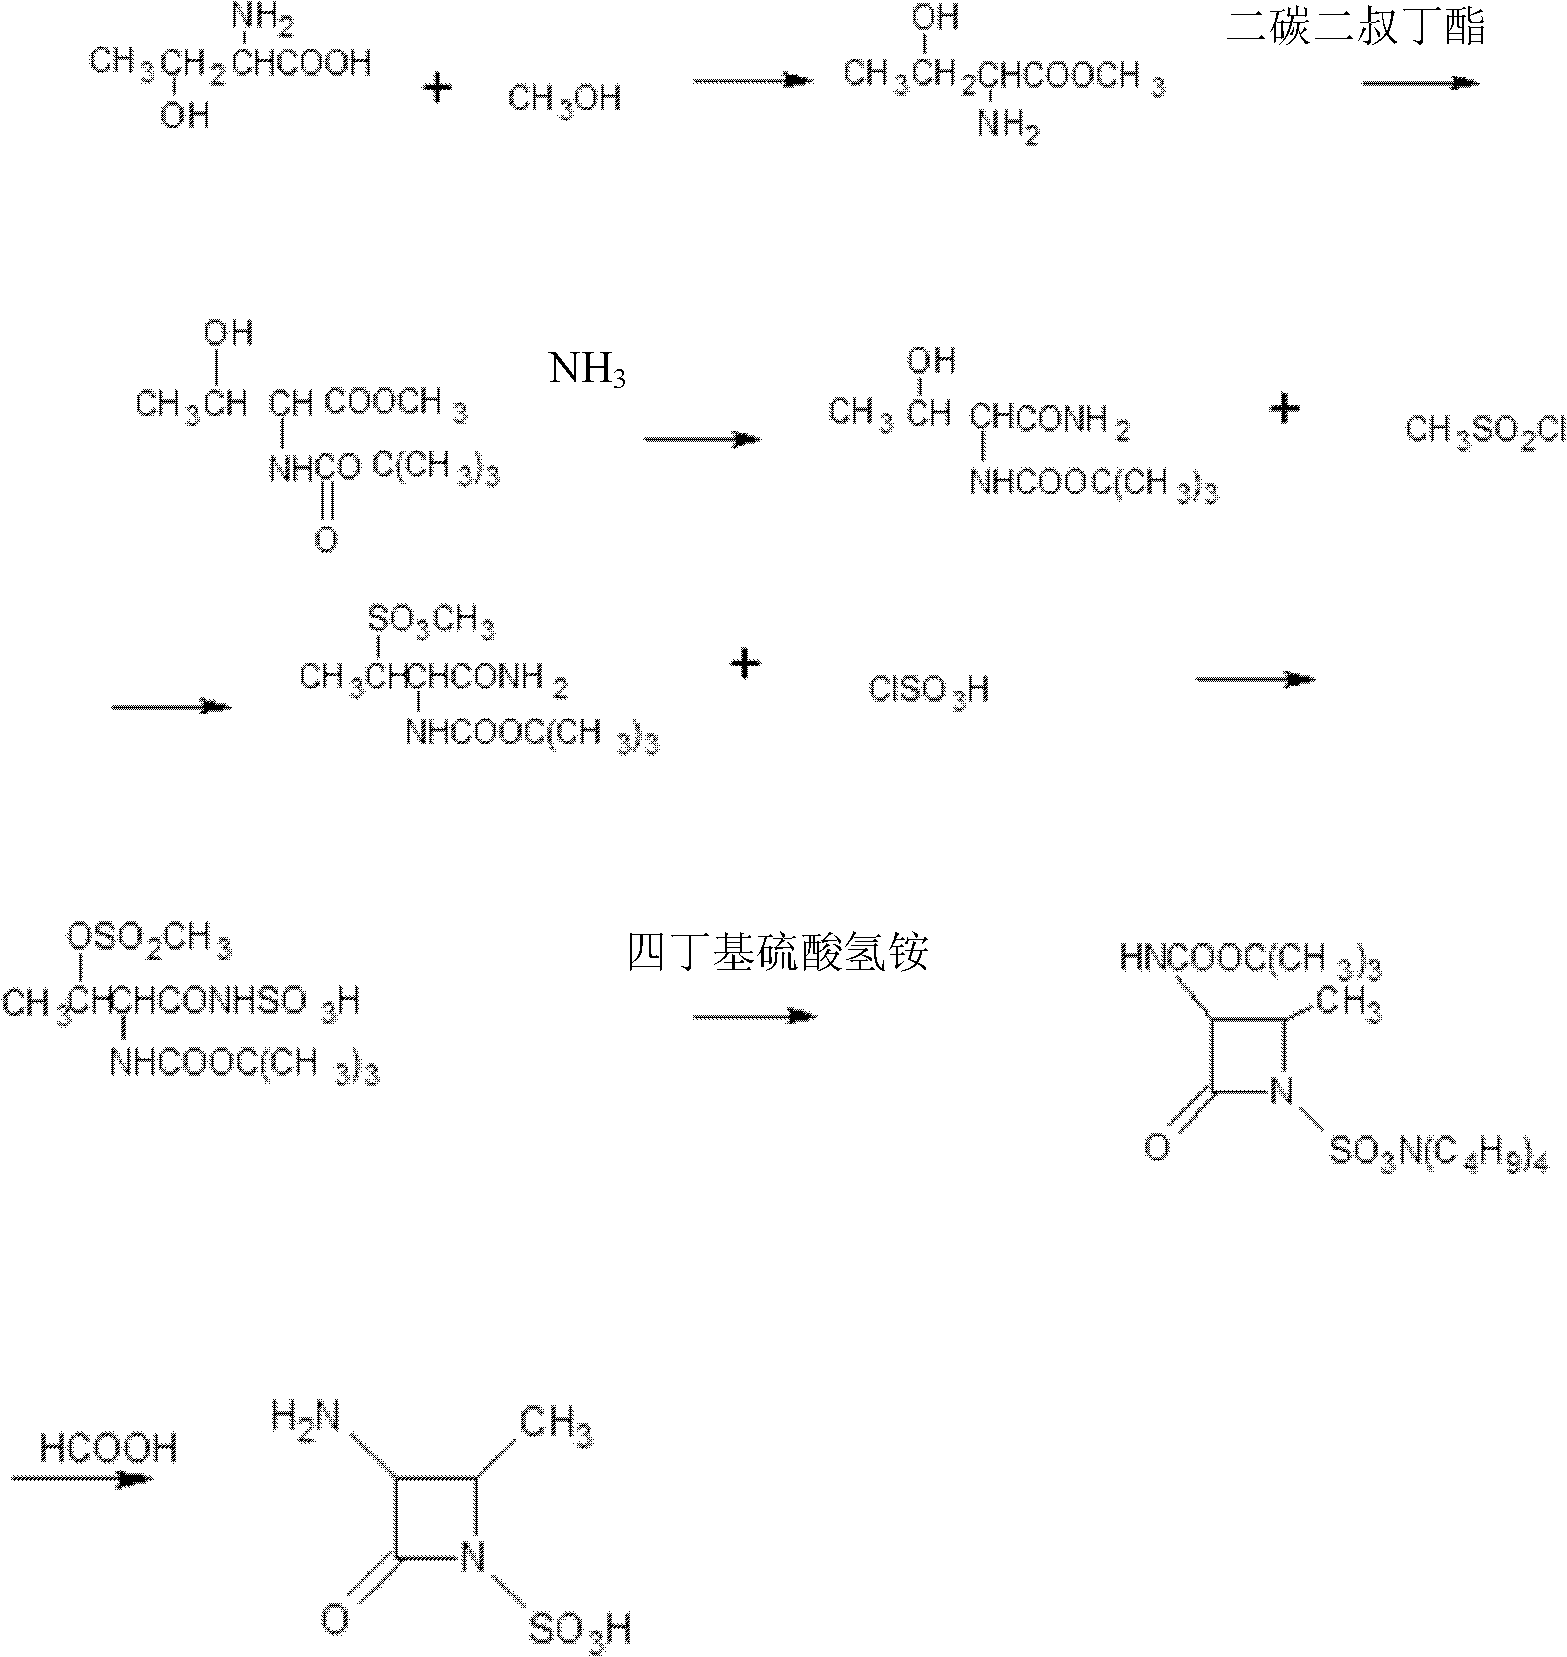 The preparation method of aztreonam monocyclic nucleus